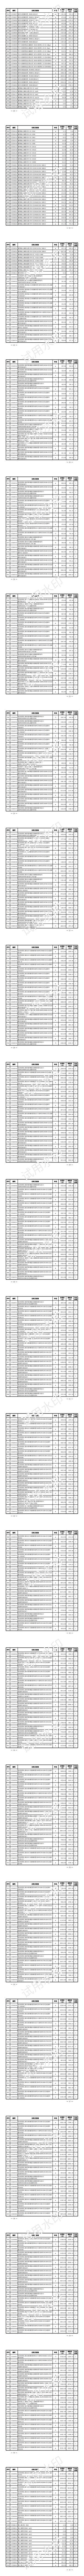 上海水务工程价格信息（2023年7月第六期）_01.png